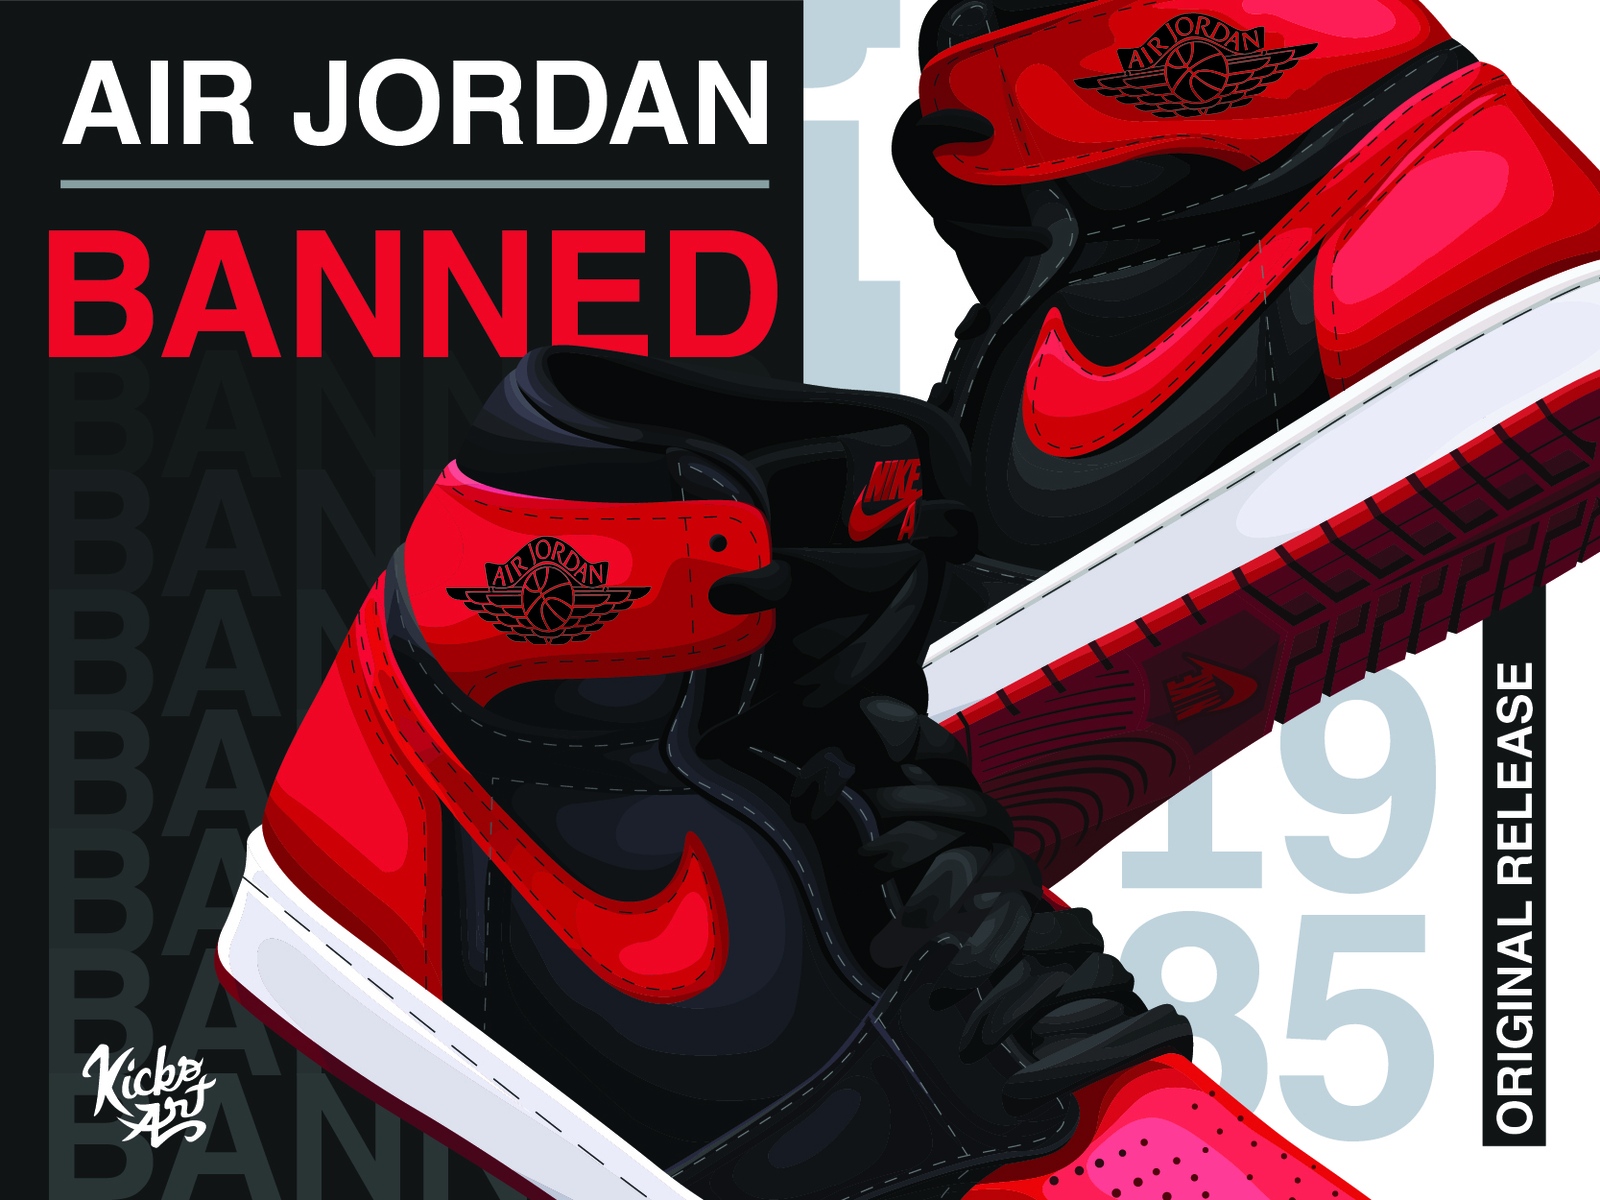 Air Jordan 1 Banned Illustration by Steve Camargo on Dribbble